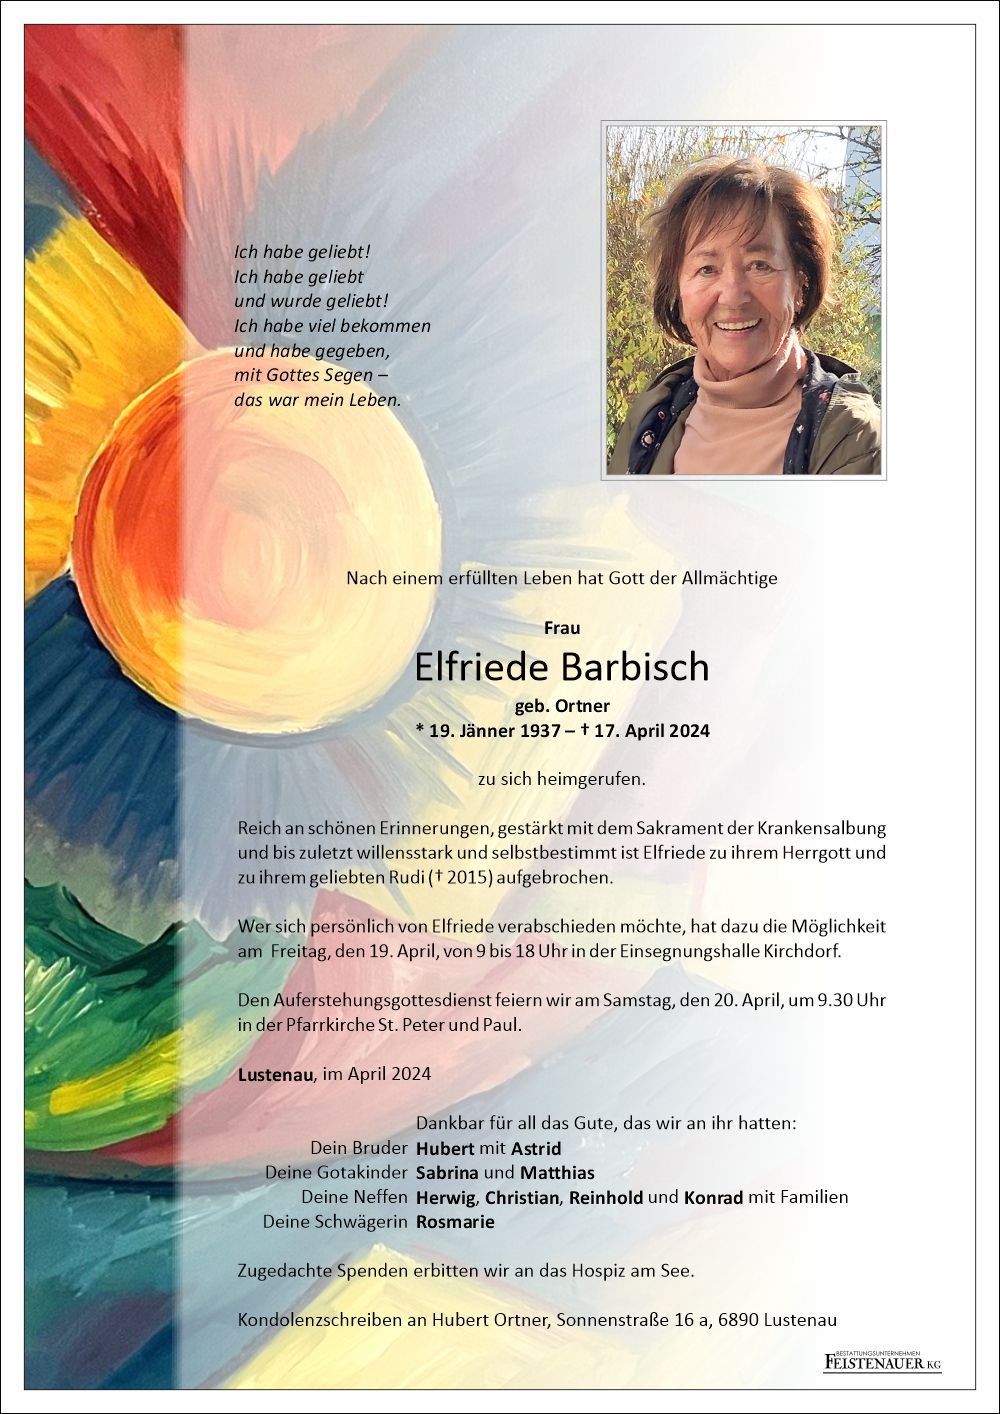 Elfriede Barbisch